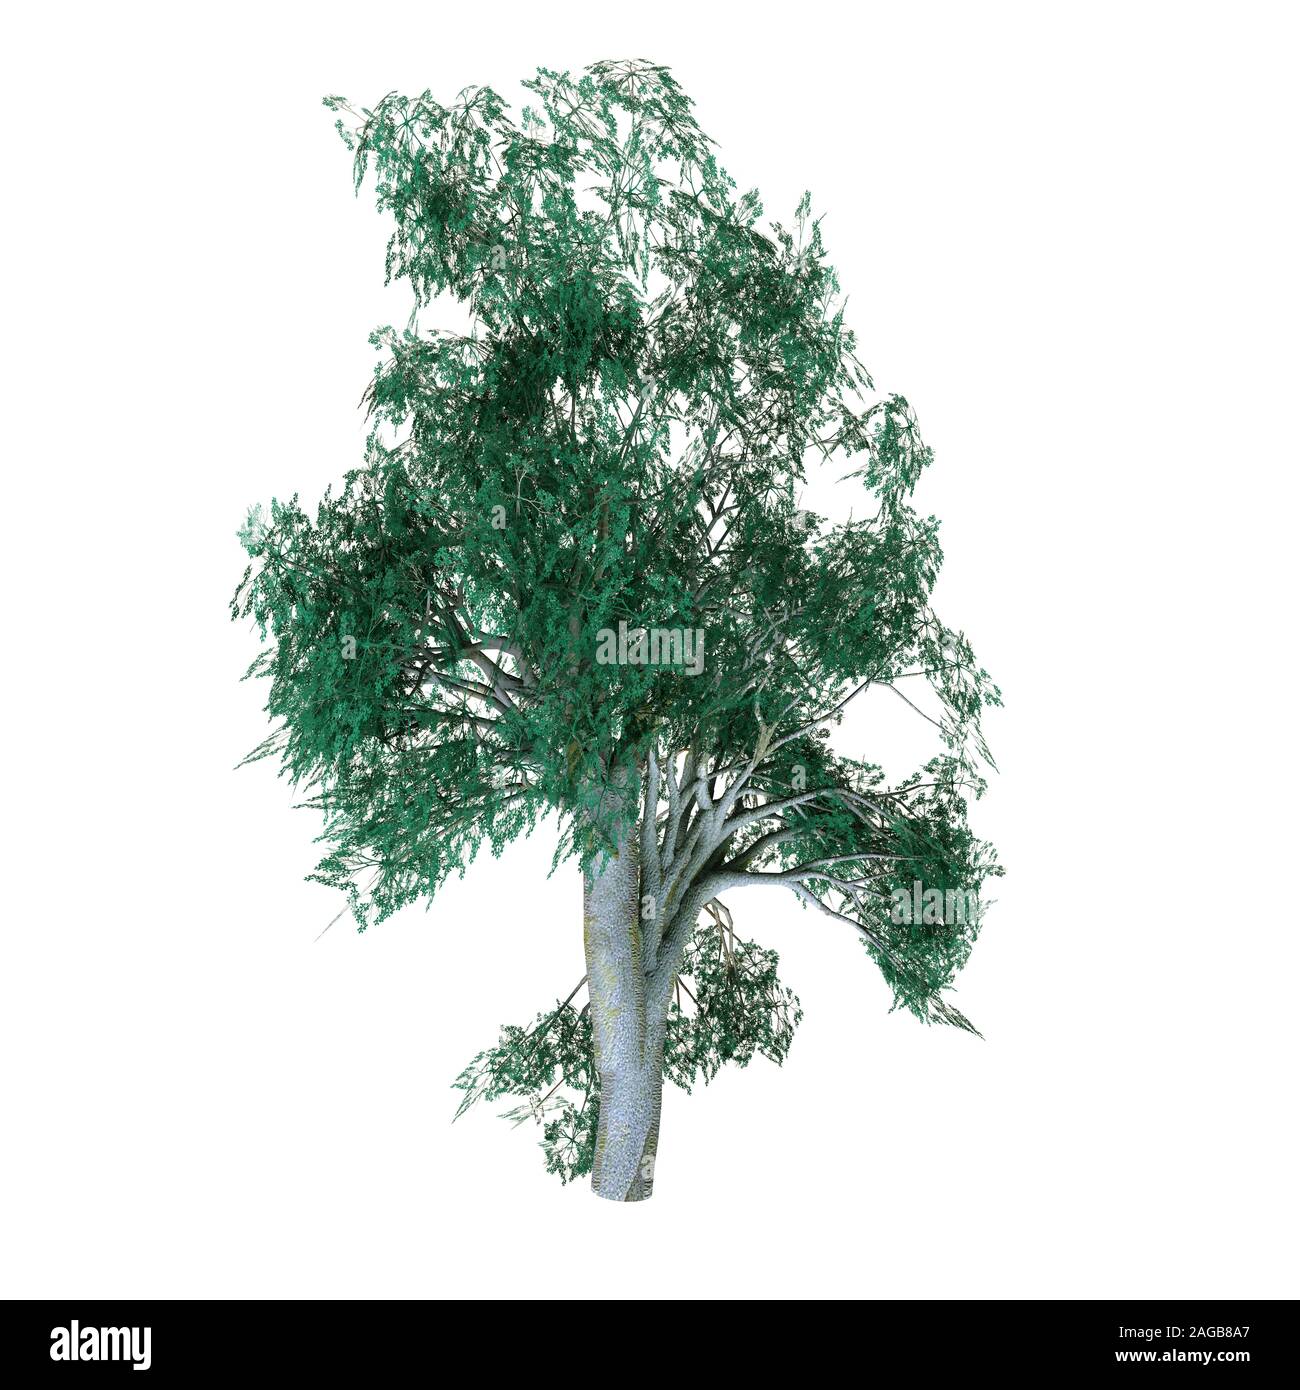 L'autre boîte grise arbre - Arbre de forêt d'Eucalyptus est bosistoana qu'est originaire de sud-est de l'Australie et peut atteindre jusqu'à 200 pieds. Banque D'Images